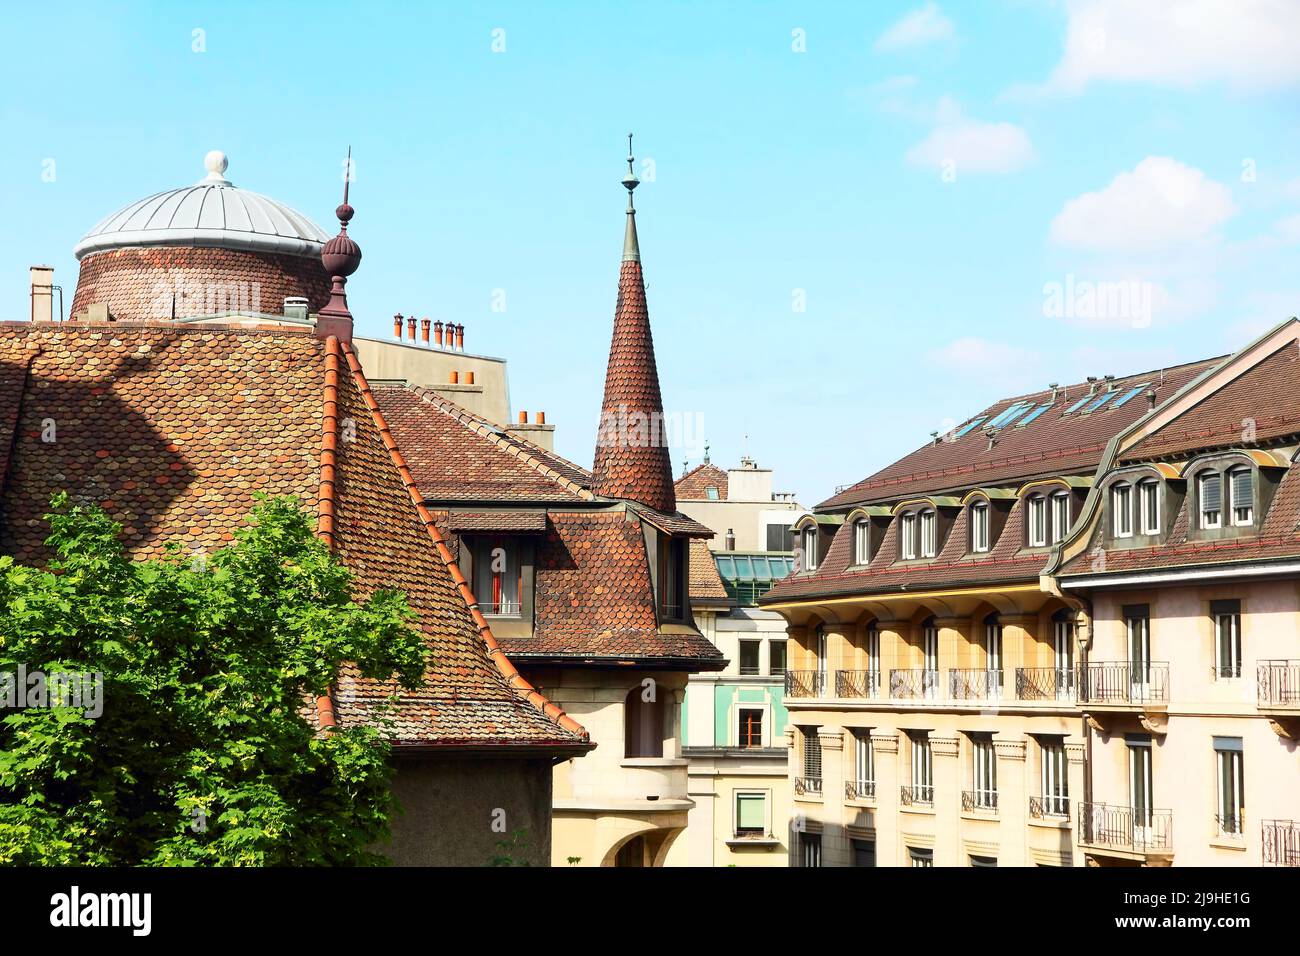 Vue sur les toits et les fenêtres de la ville de Genève contre le ciel bleu. Genève, Suisse. Banque D'Images